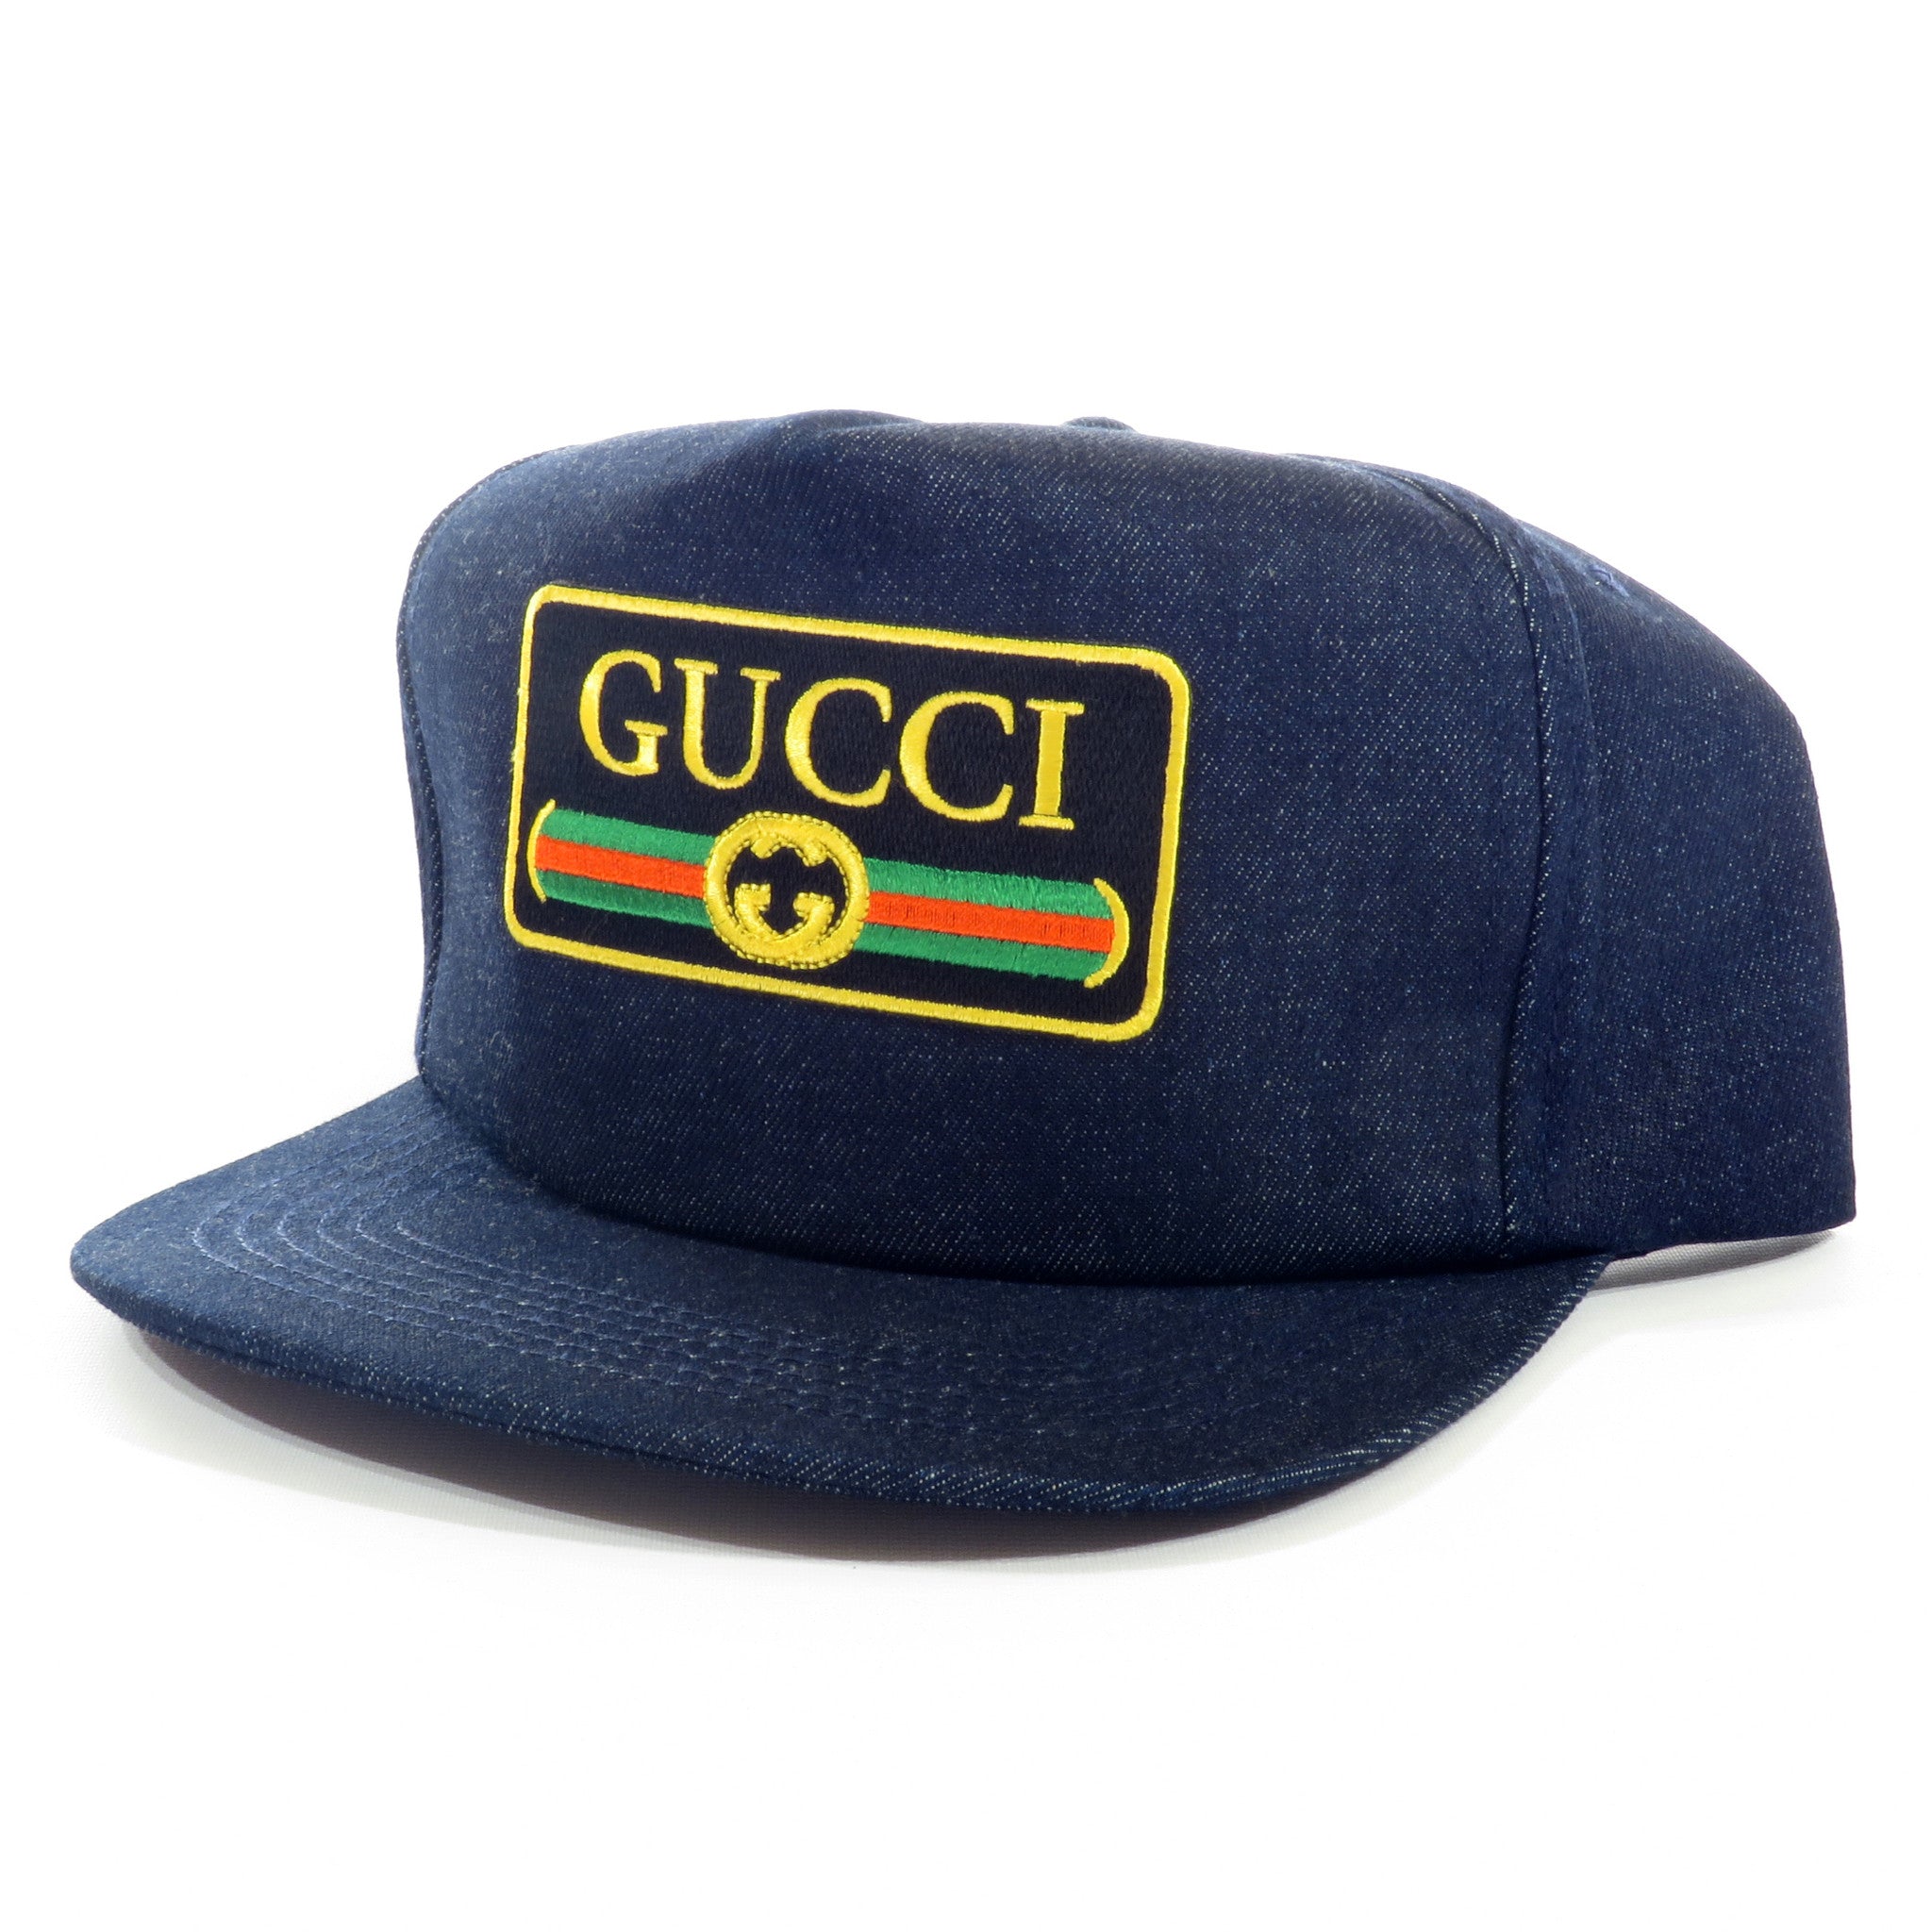 Gucci Rolls Royce Raw Denim Snapback Hat